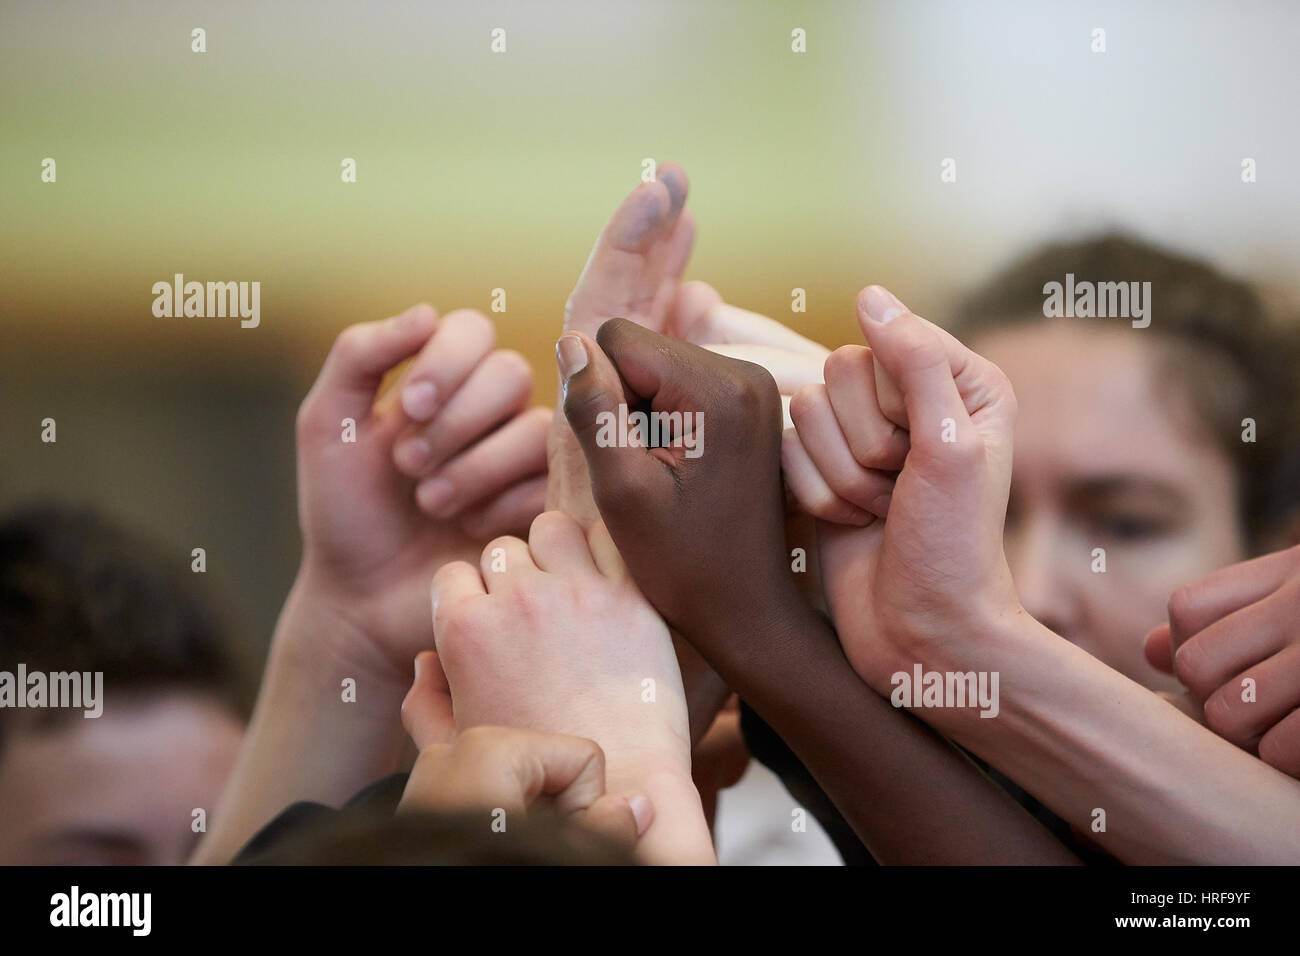 Les mains en noir et blanc, l'alignement de basket-ball, Allemagne Banque D'Images